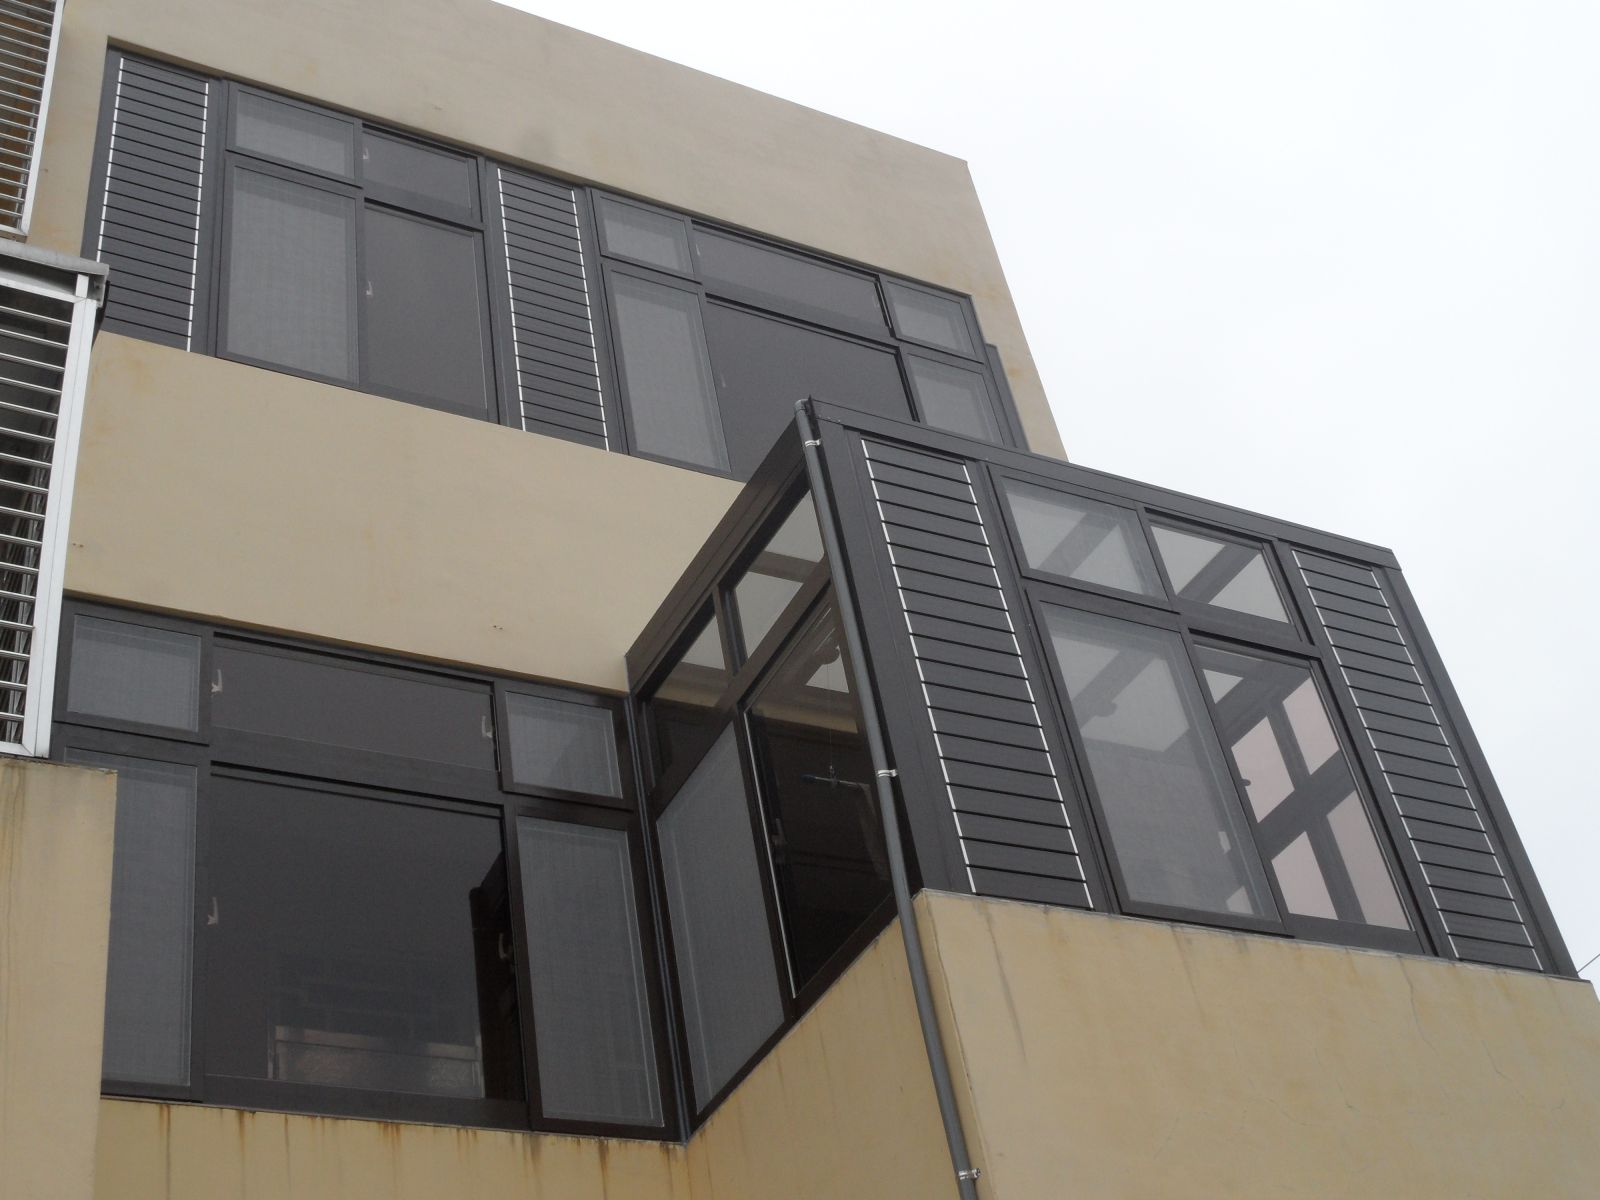 屋頂玻璃為5+5膠合玻璃,窗戶玻璃採用茶色強化玻璃